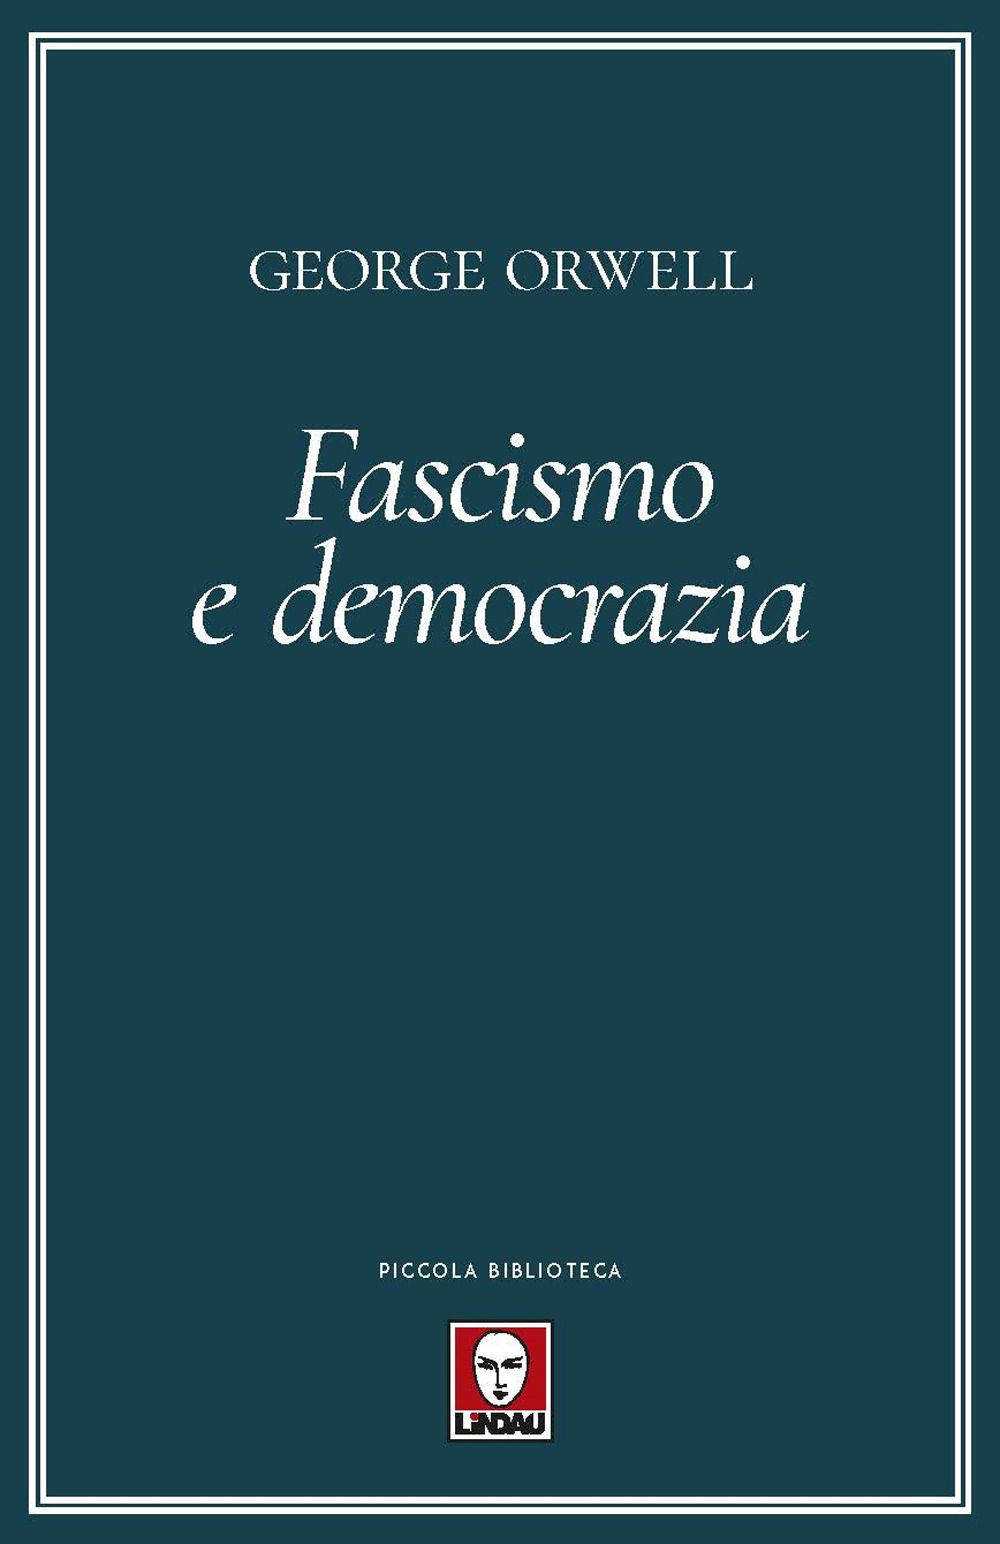 FASCISMO E DEMOCRAZIA - Orwell George - 9788833538891